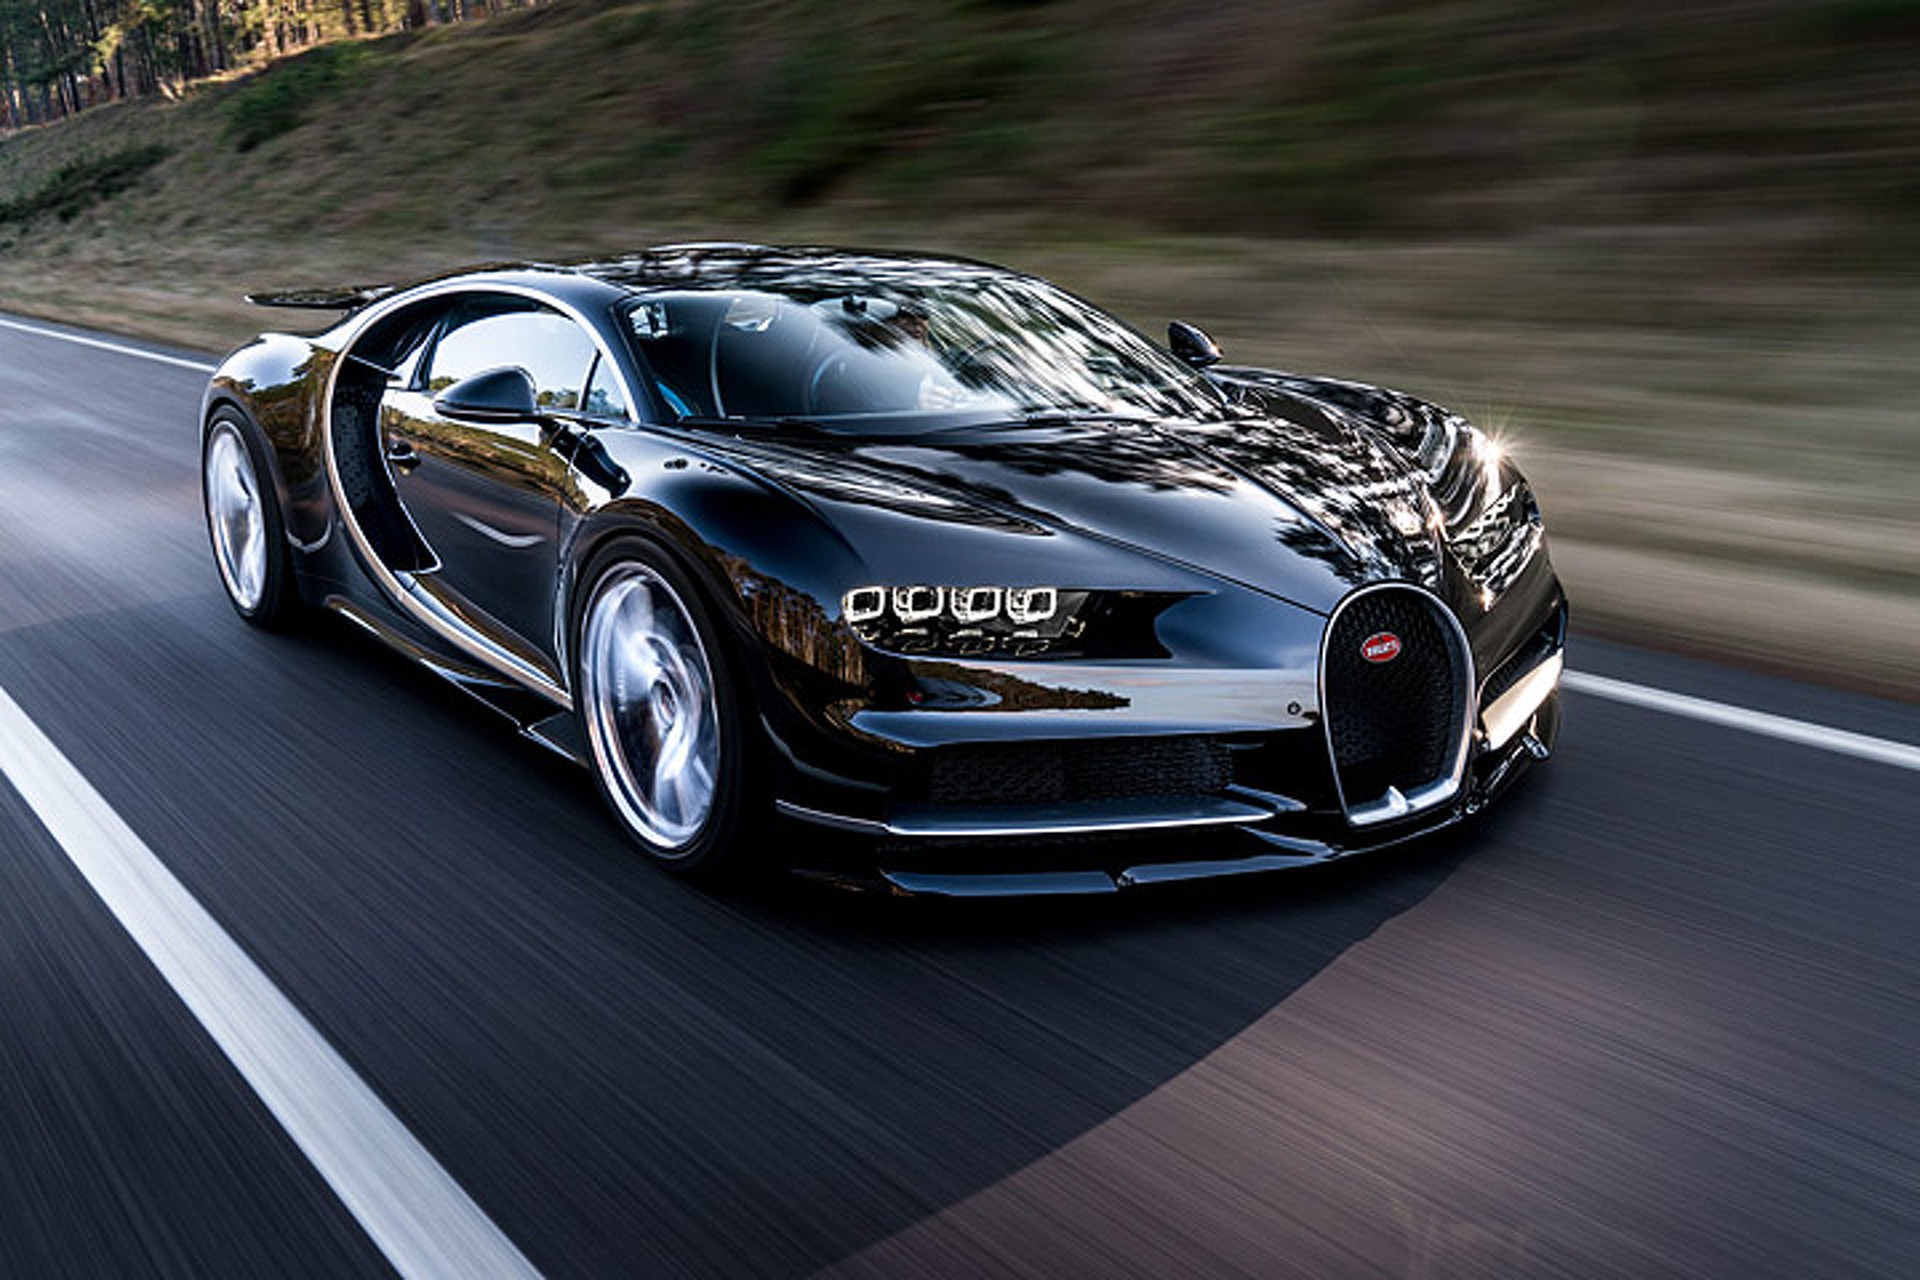 Bugatti: Hãy chiêm ngưỡng vẻ đẹp hoàn hảo của siêu xe Bugatti với những đường nét cực kỳ sang trọng và một động cơ mạnh mẽ. Bạn sẽ cảm nhận được sự khác biệt khi ngắm nhìn và chắc chắn sẽ bị cuốn hút bởi vẻ đẹp độc đáo của chiếc xe này.